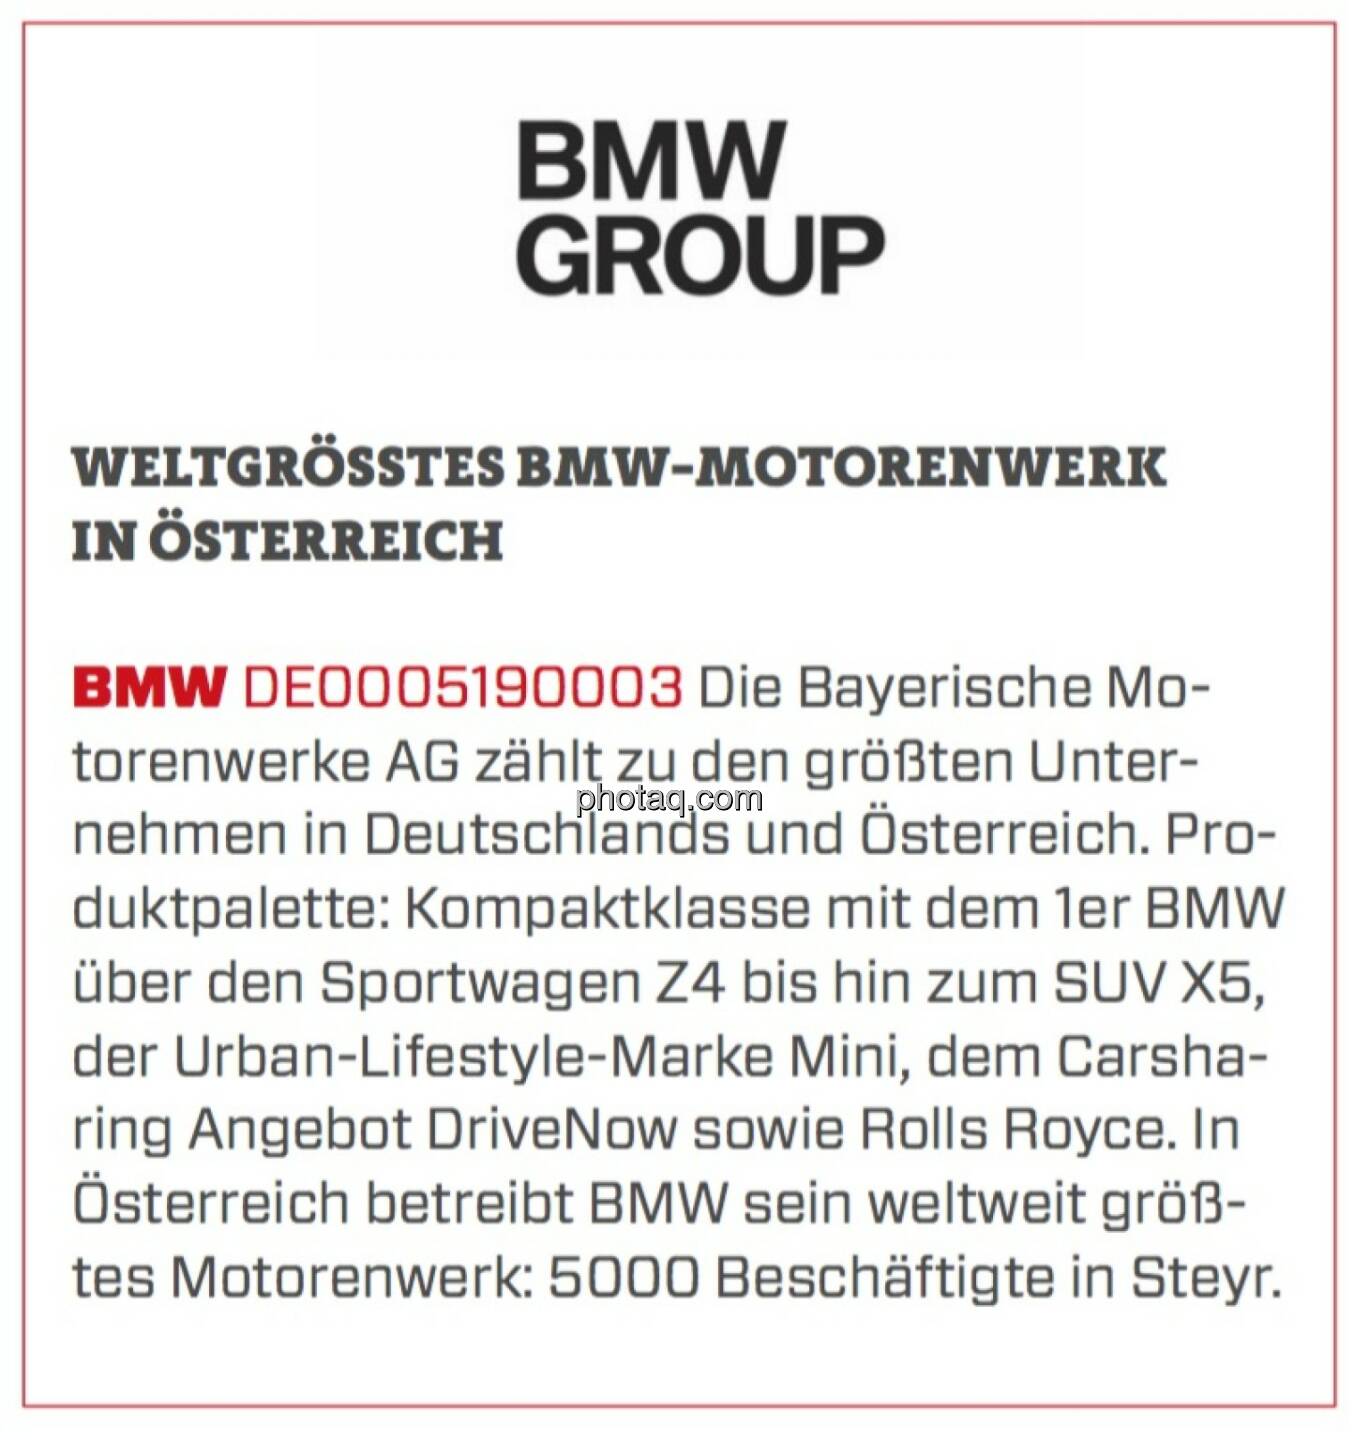 BMW - Weltgrößtes BMW-Motorenwerk in Österreich: Die Bayerische Motorenwerke AG zählt zu den größten Unternehmen in Deutschlands und Österreich. Produktpalette: Kompaktklasse mit dem 1er BMW über den Sportwagen Z4 bis hin zum SUV X5, der Urban-Lifestyle-Marke Mini, dem Carsharing Angebot DriveNow sowie Rolls Royce. In Österreich betreibt BMW sein weltweit größtes Motorenwerk: 5000 Beschäftigte in Steyr.